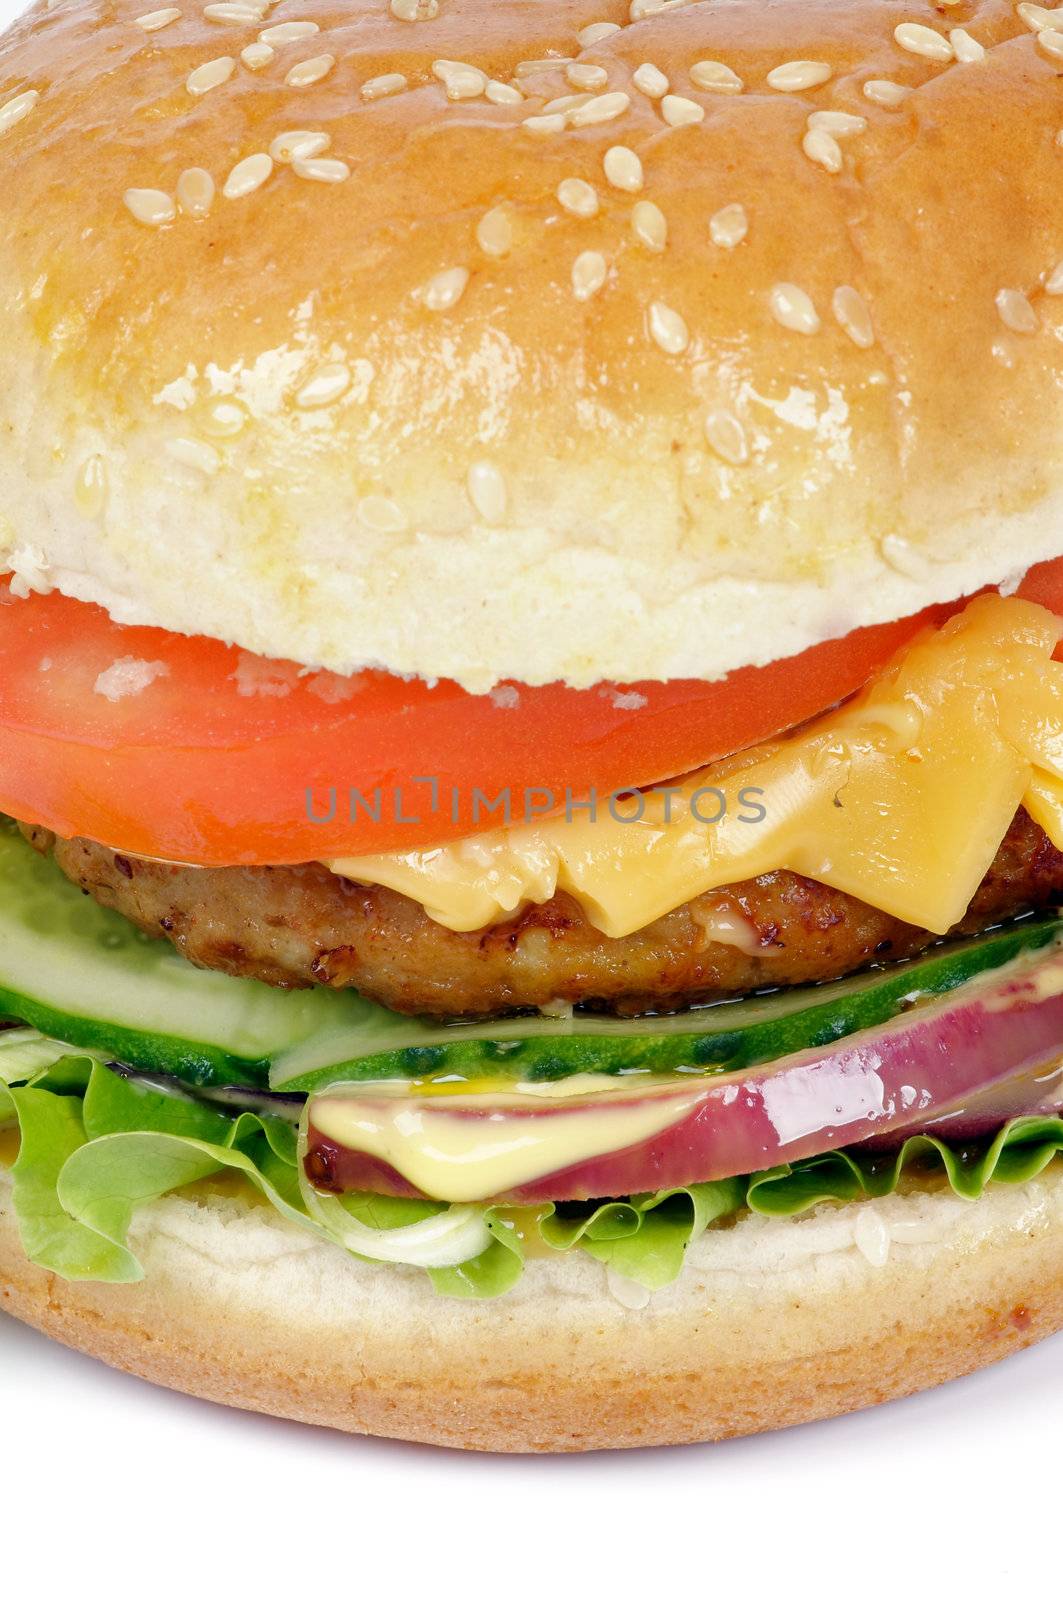 Tasty Hamburger closeup by zhekos